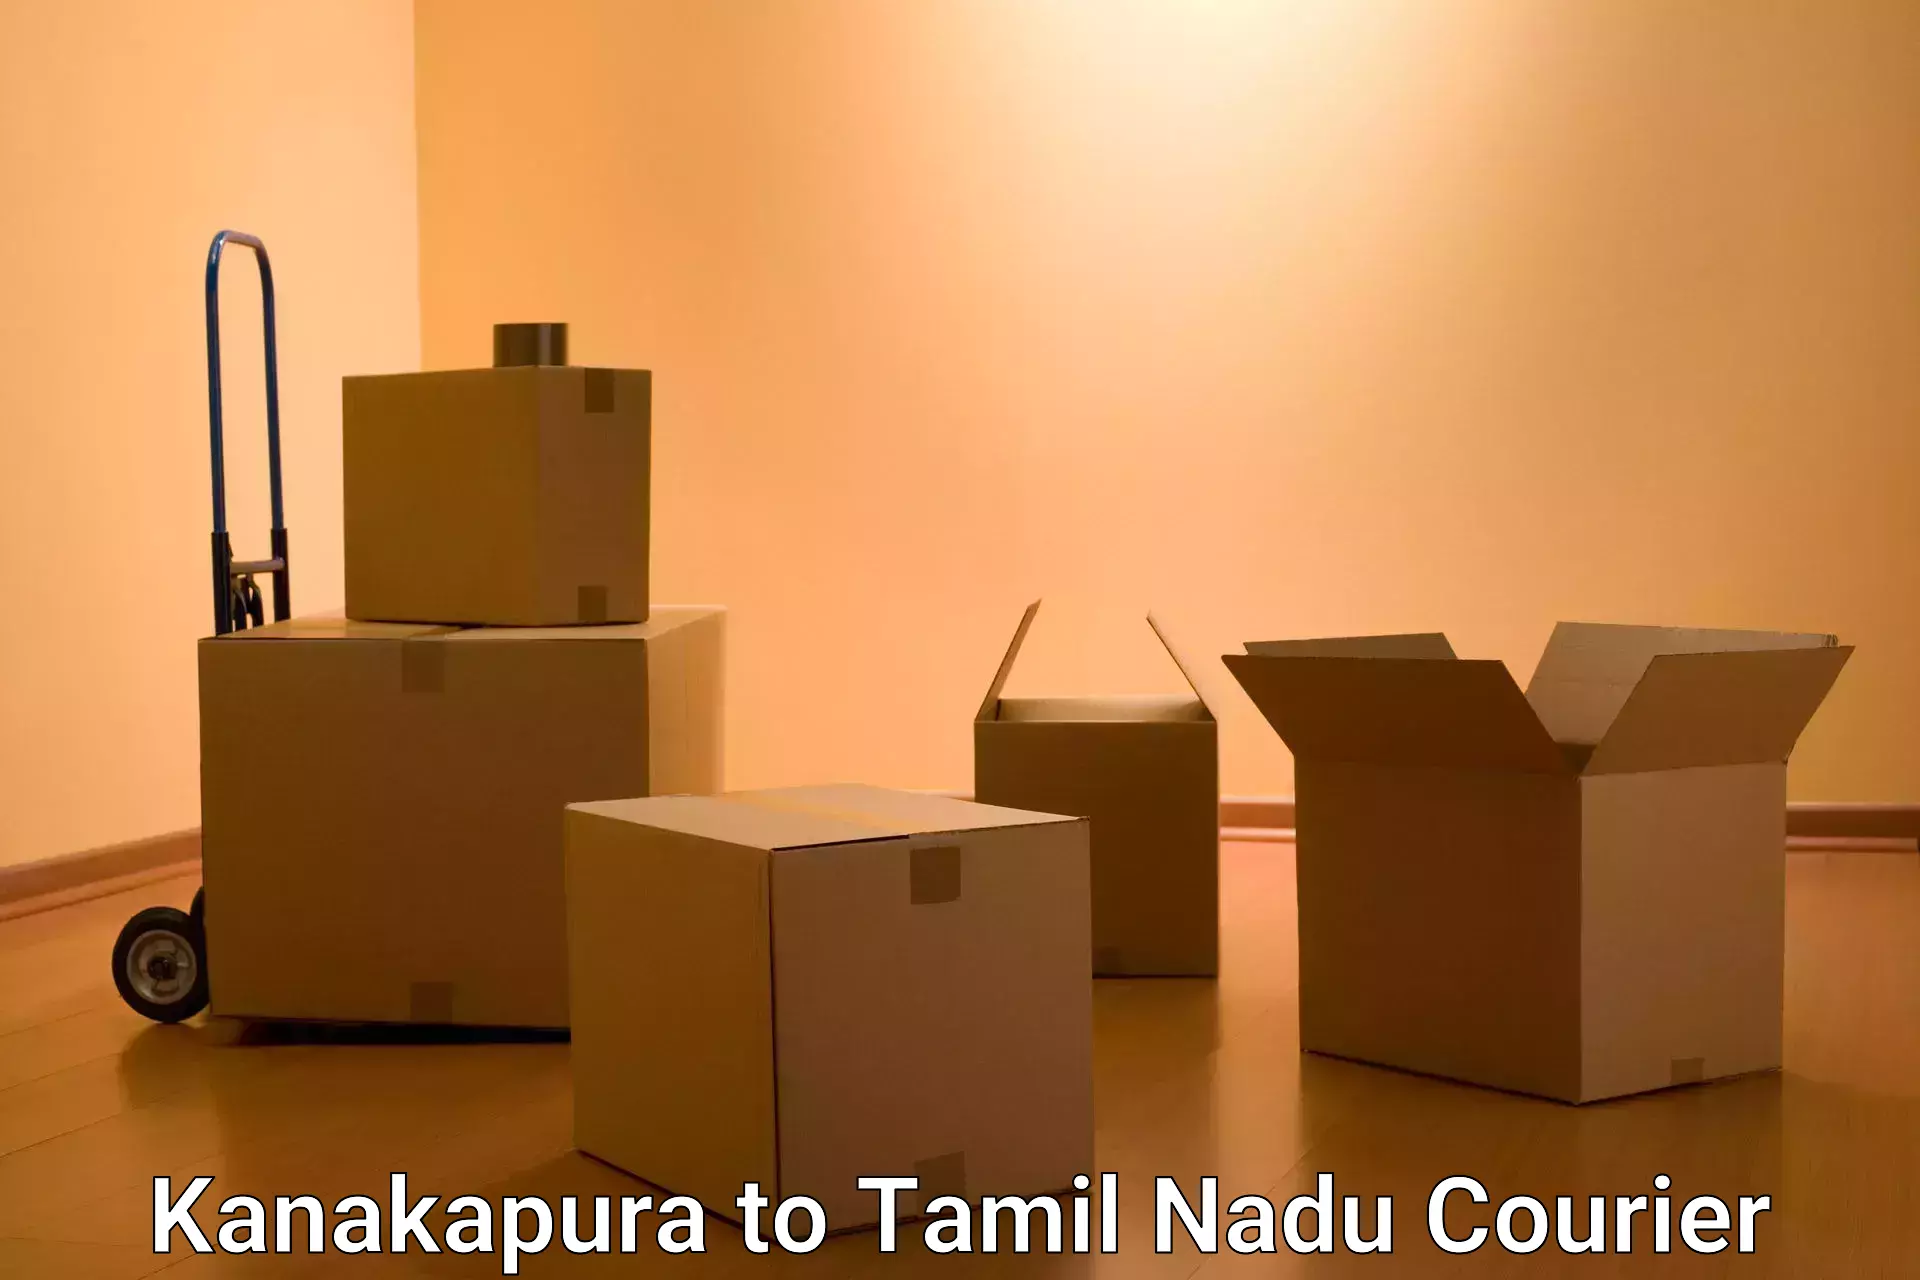 Online courier booking in Kanakapura to Vickramasingapuram